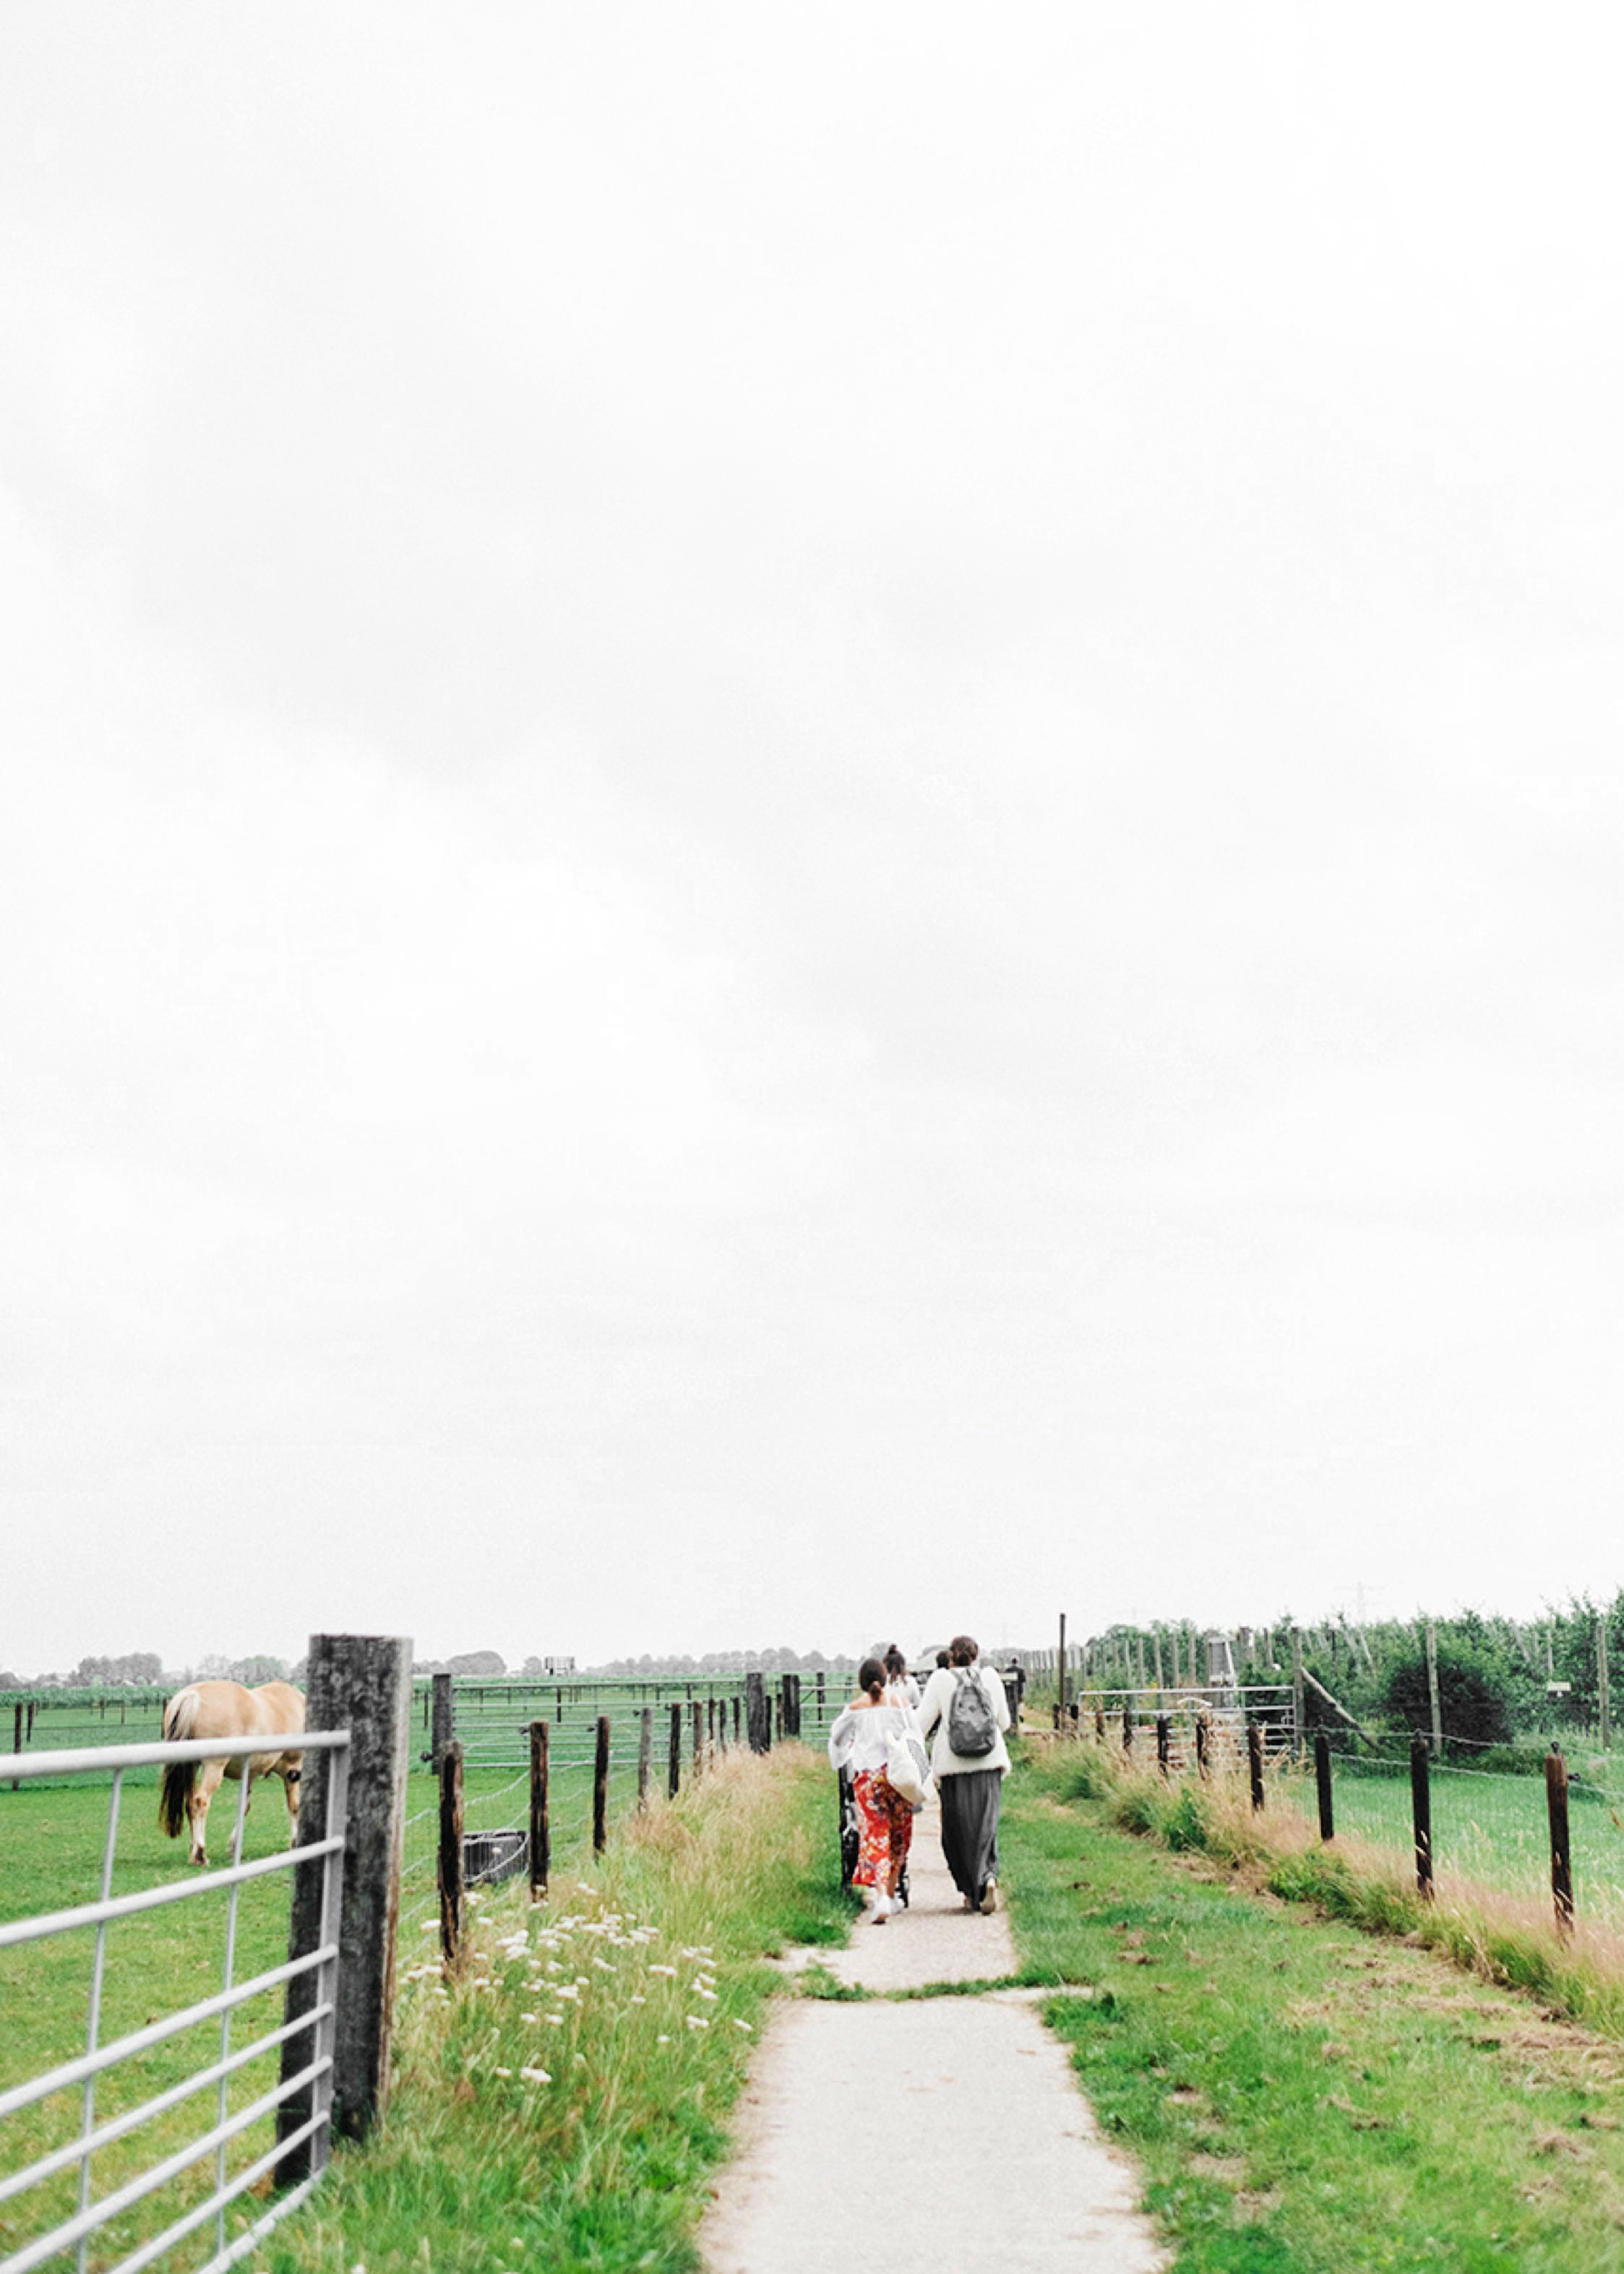 Photography intimate farm wedding - Farm wedding